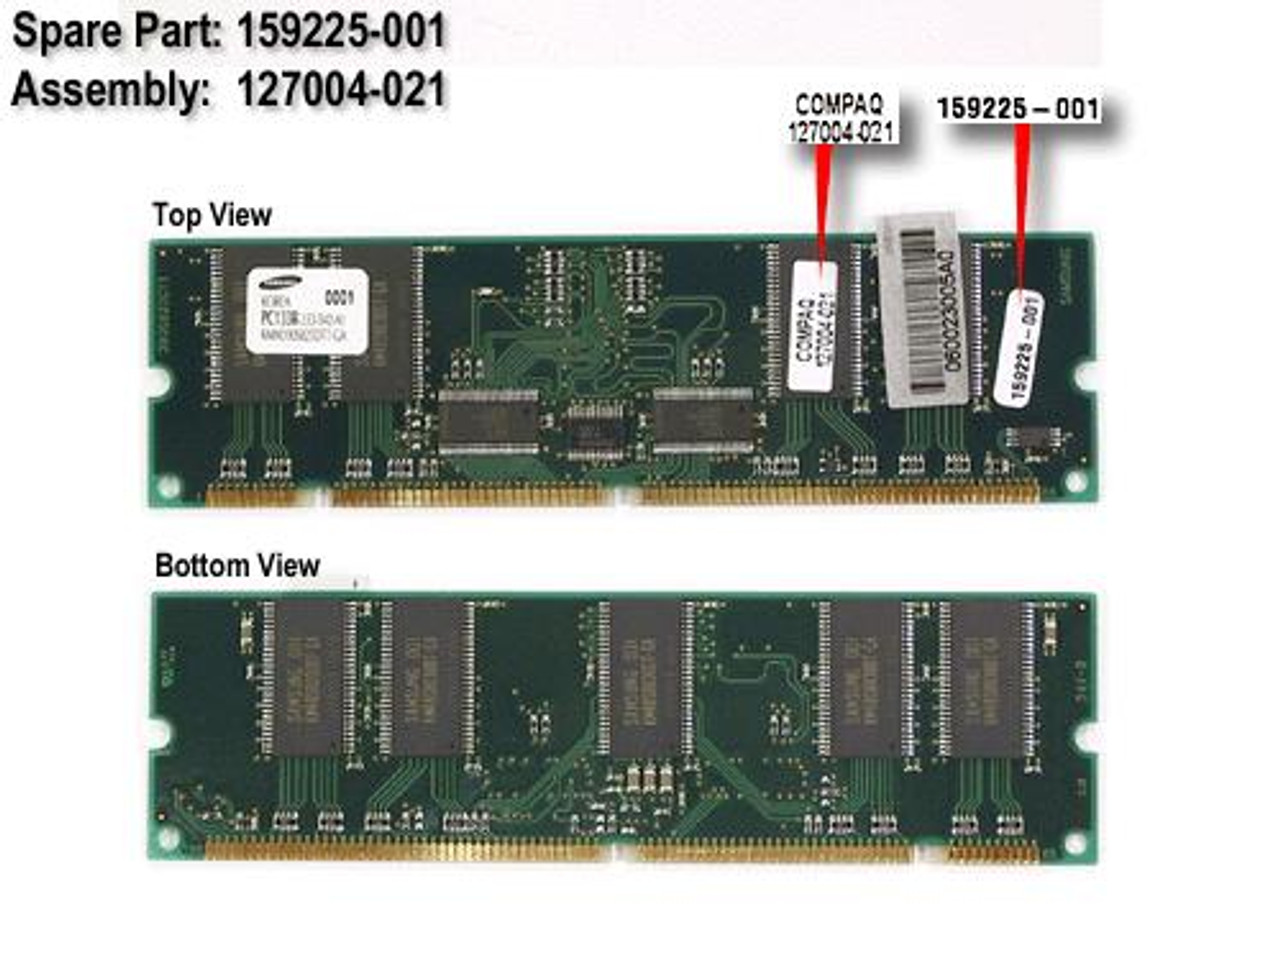 SPS-MEM DIMM 64MB SDRAM - 159225-001